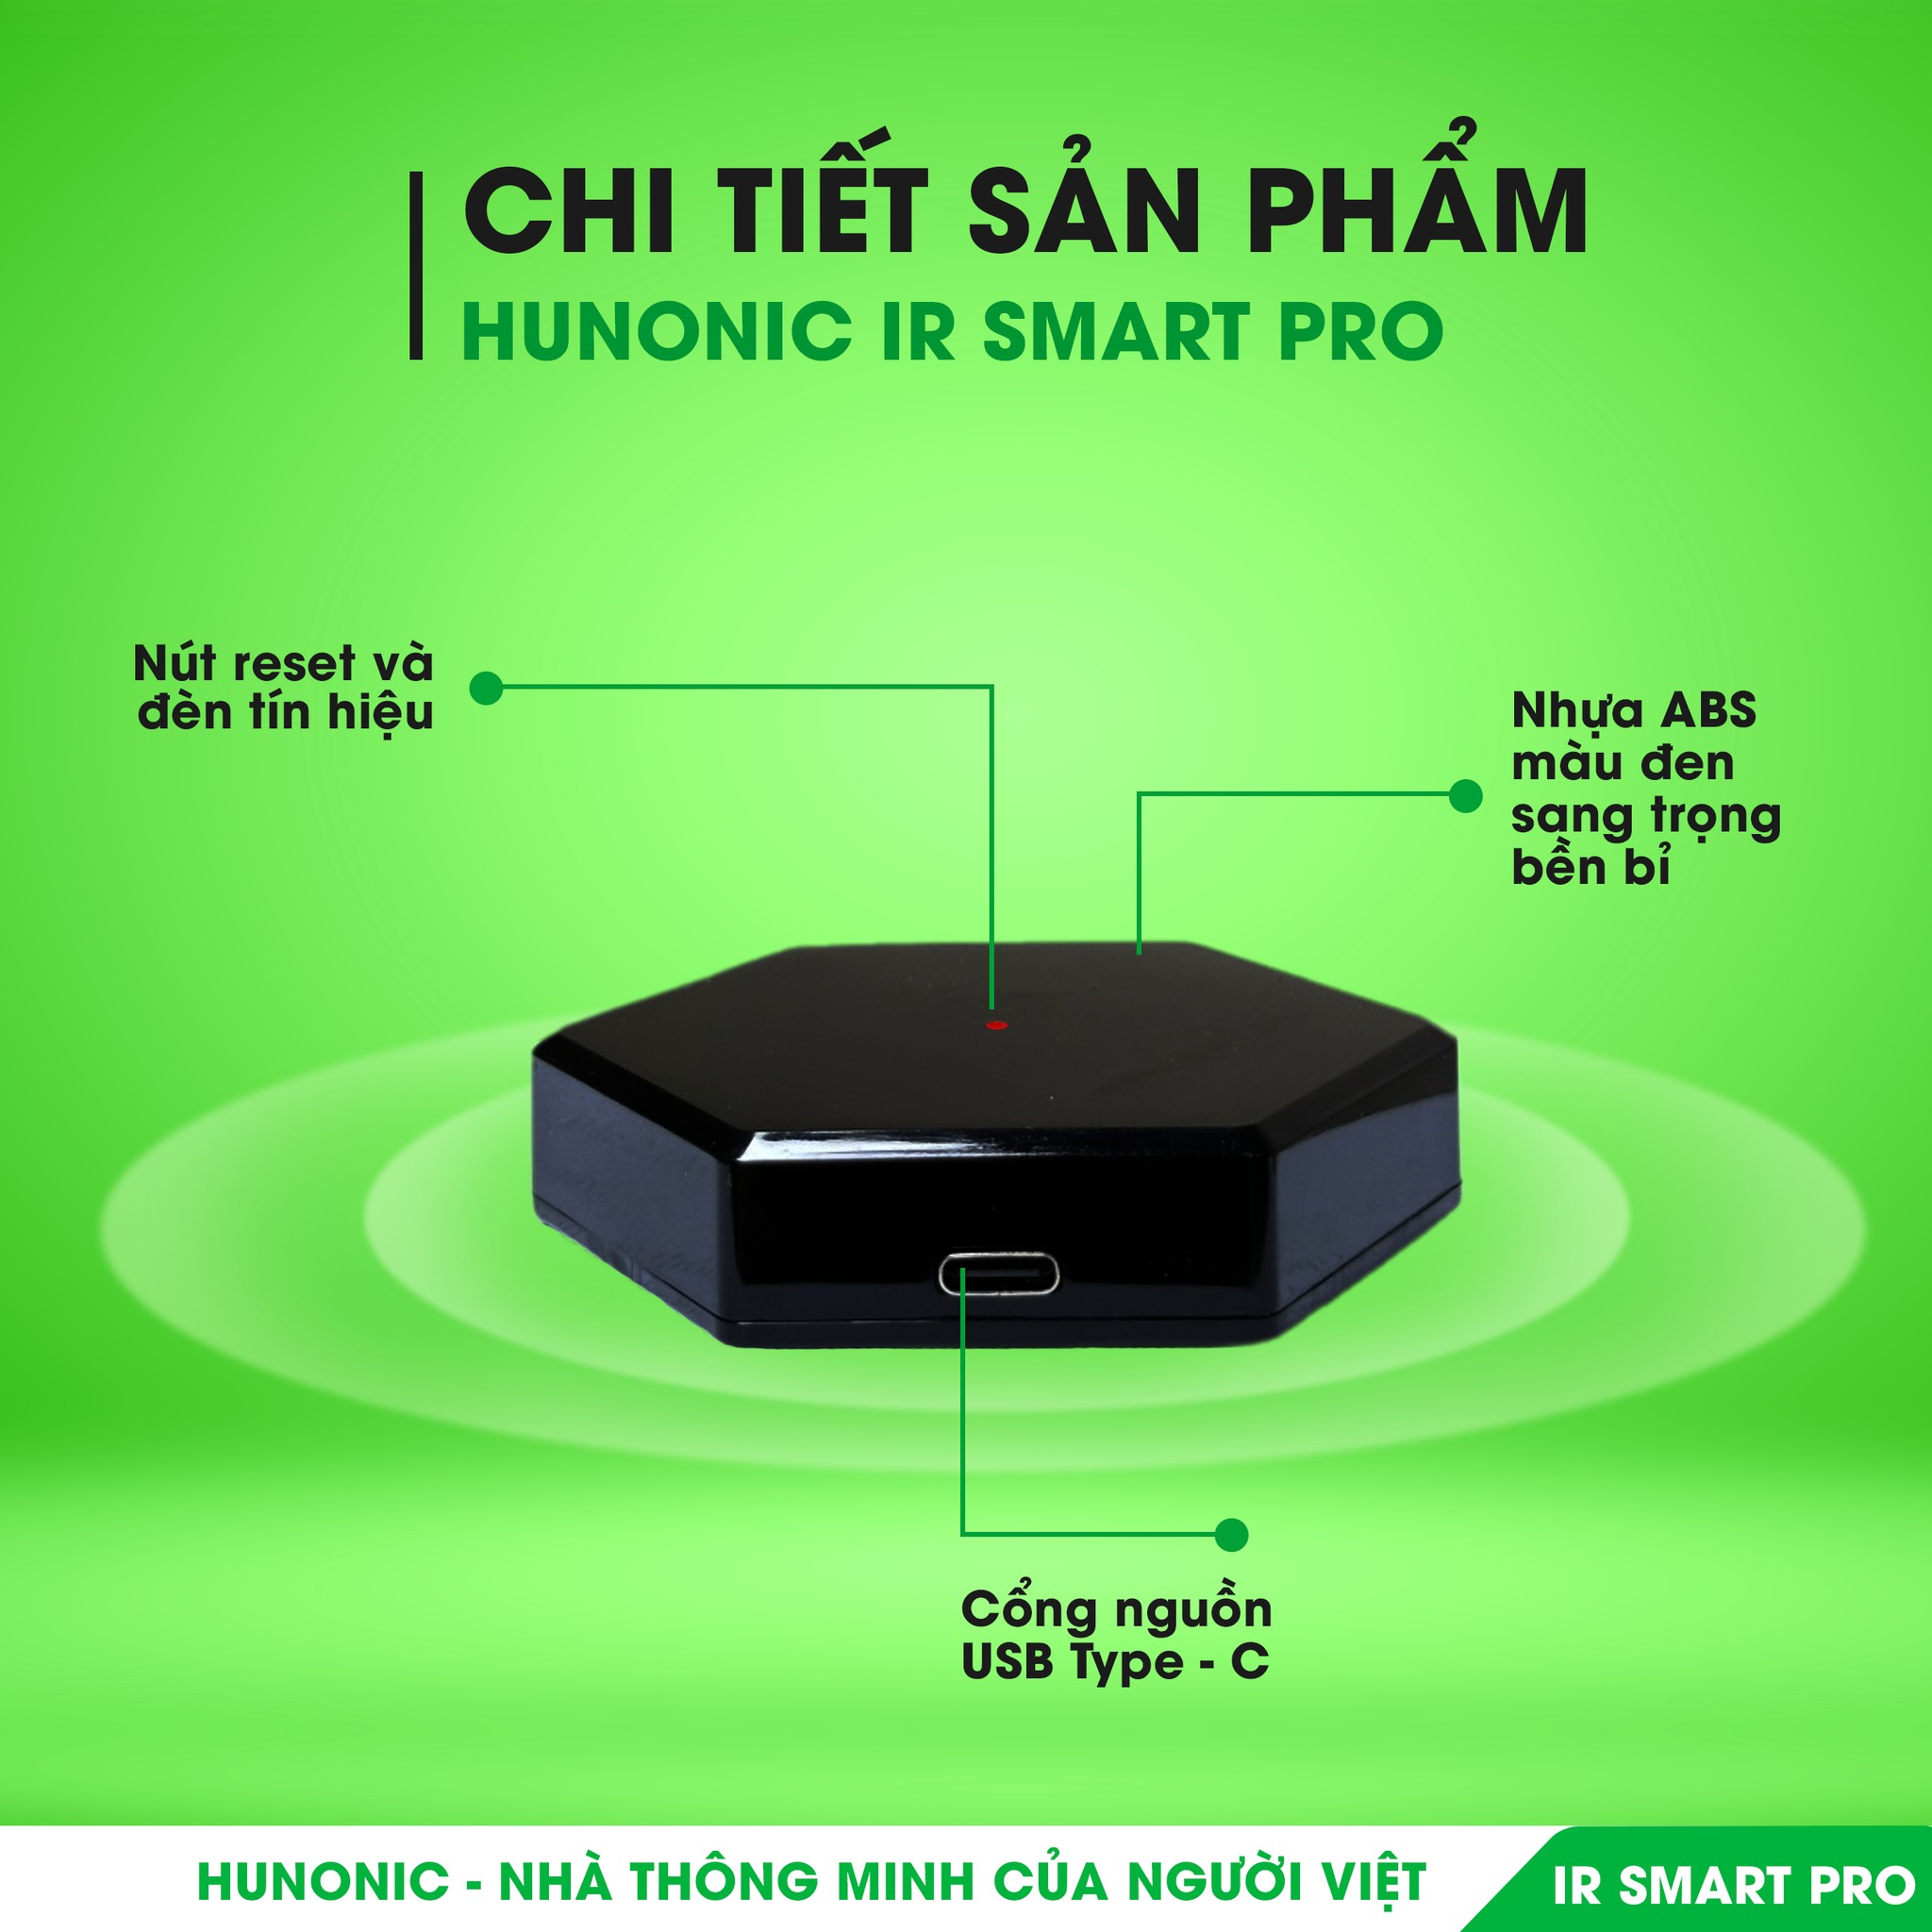 Bộ điều khiển Tivi, Điều Hoà qua điện thoại Hunonic IR Smart Pro